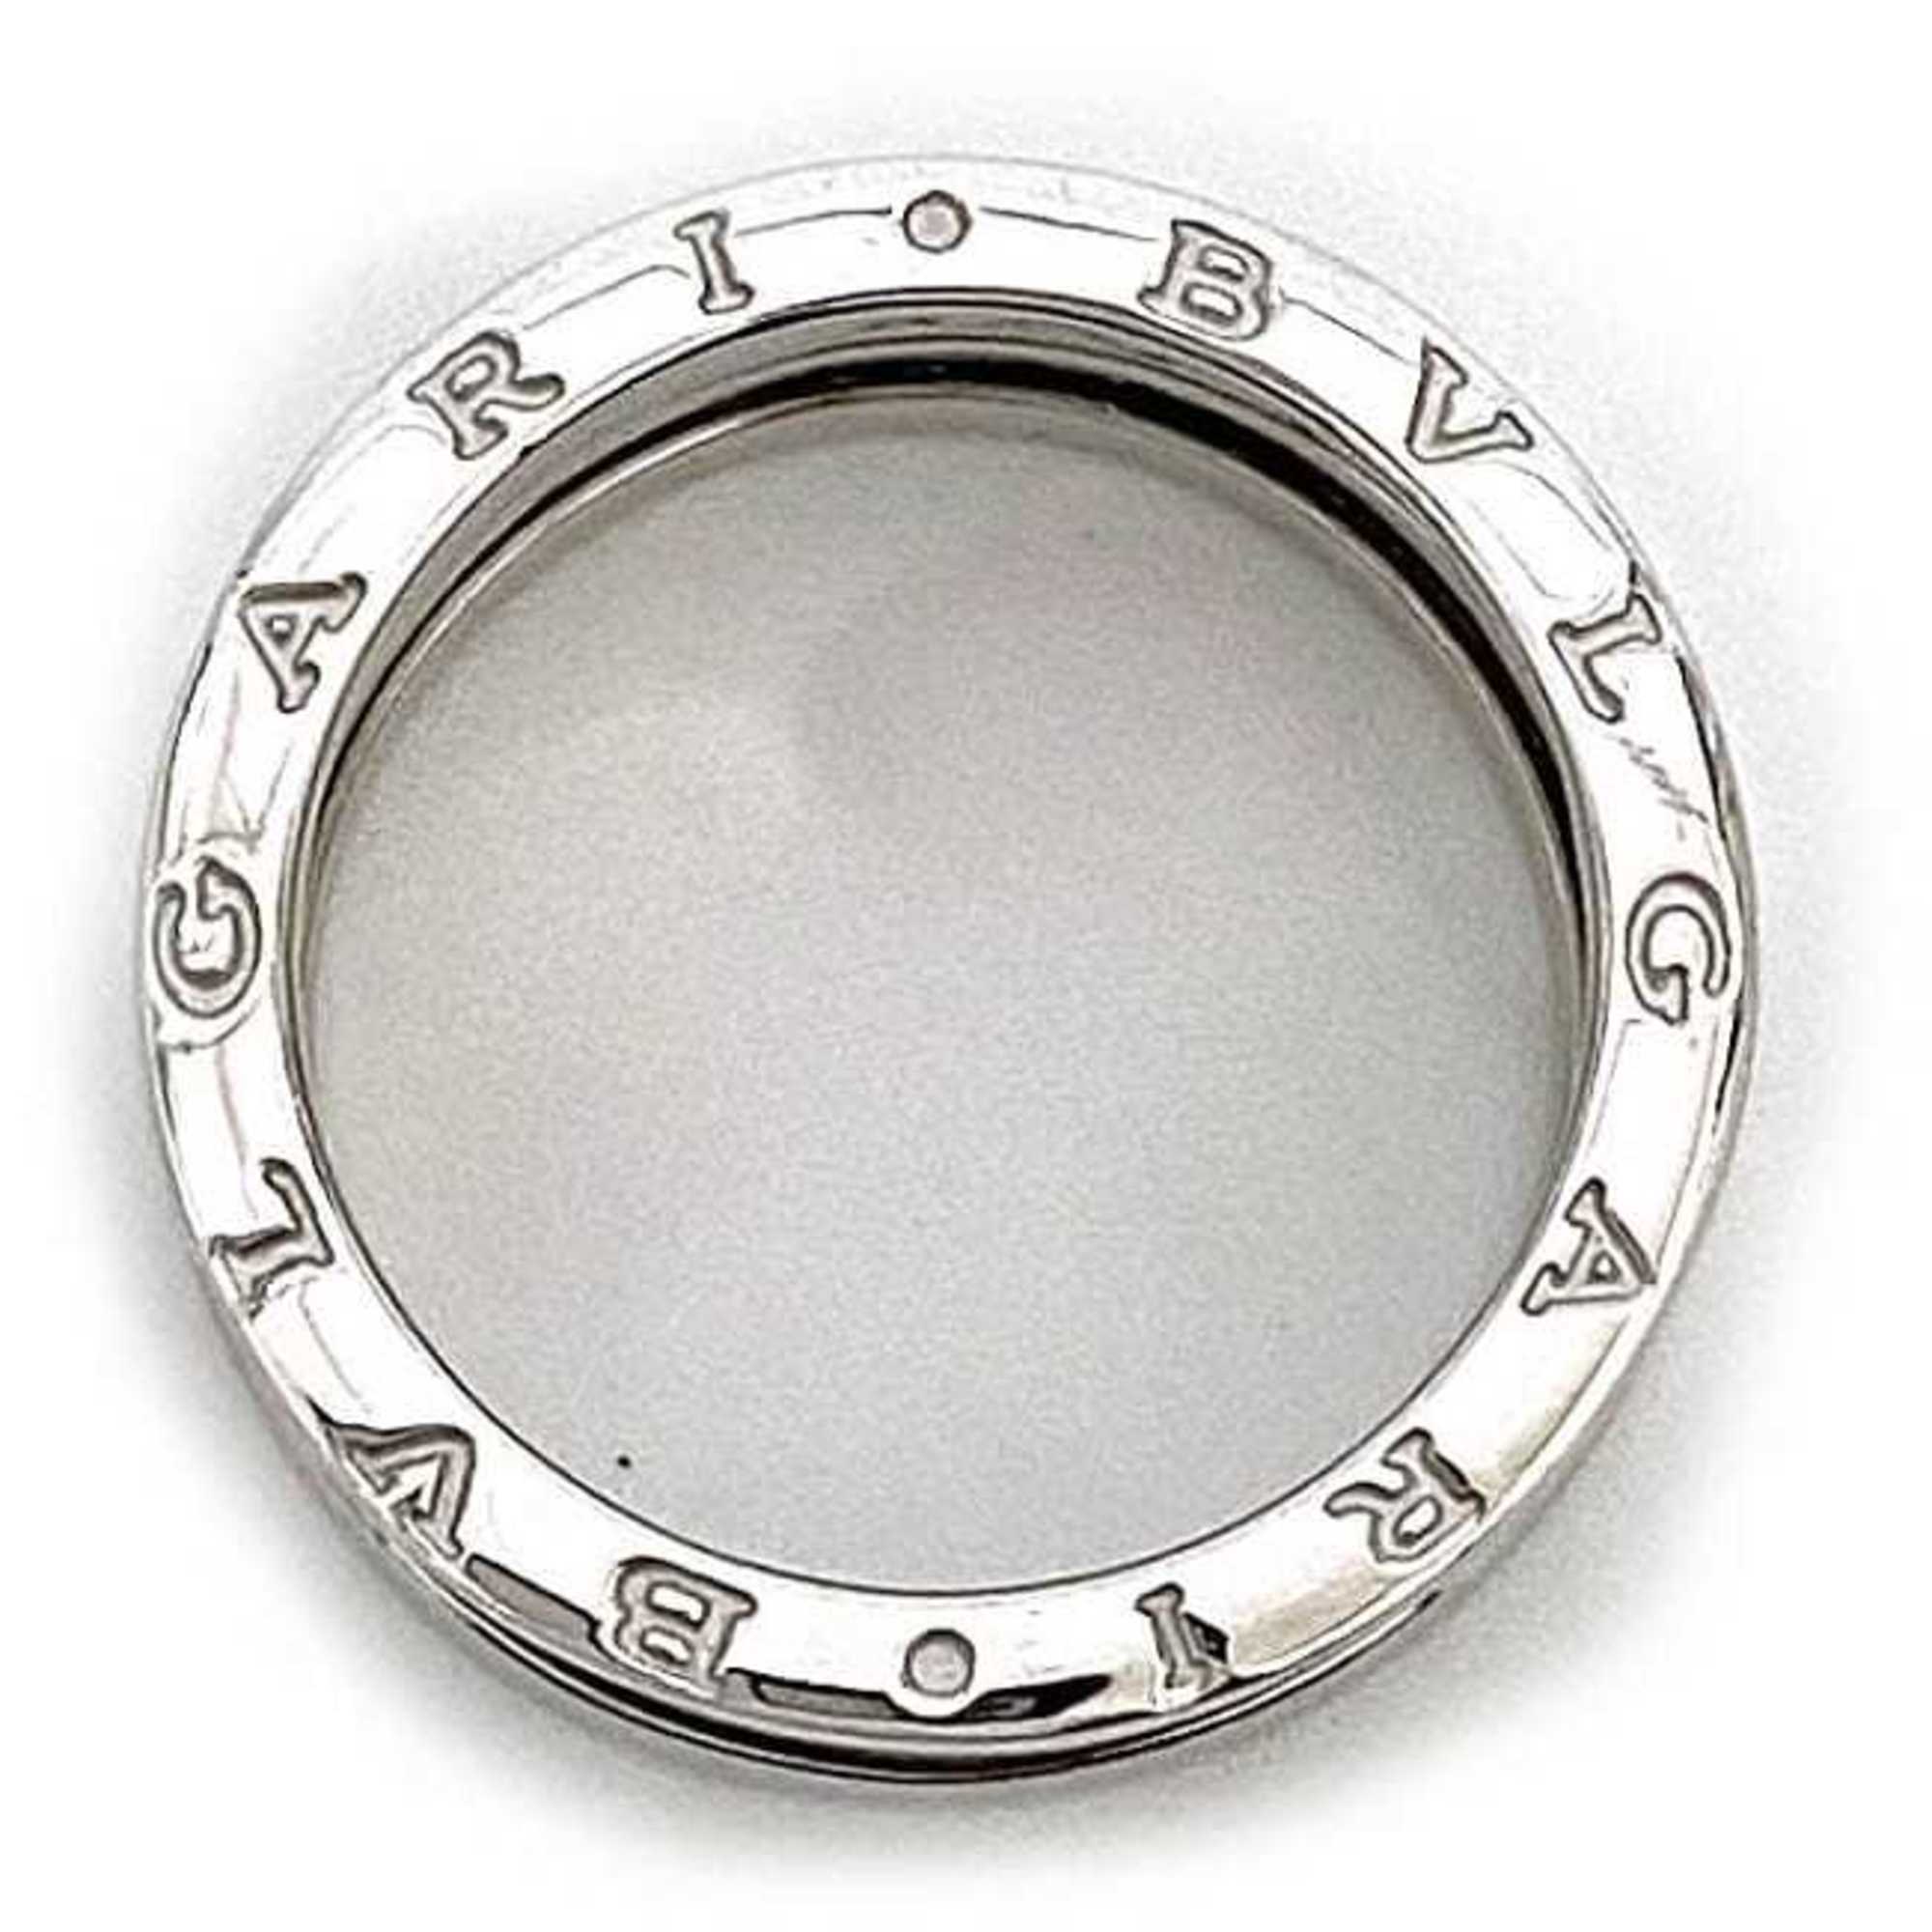 Bvlgari B-ZERO1 ring WG white gold B zero one 16.5 K18 750 BVLGARI 58 K18WG 2 band two men's women's unisex